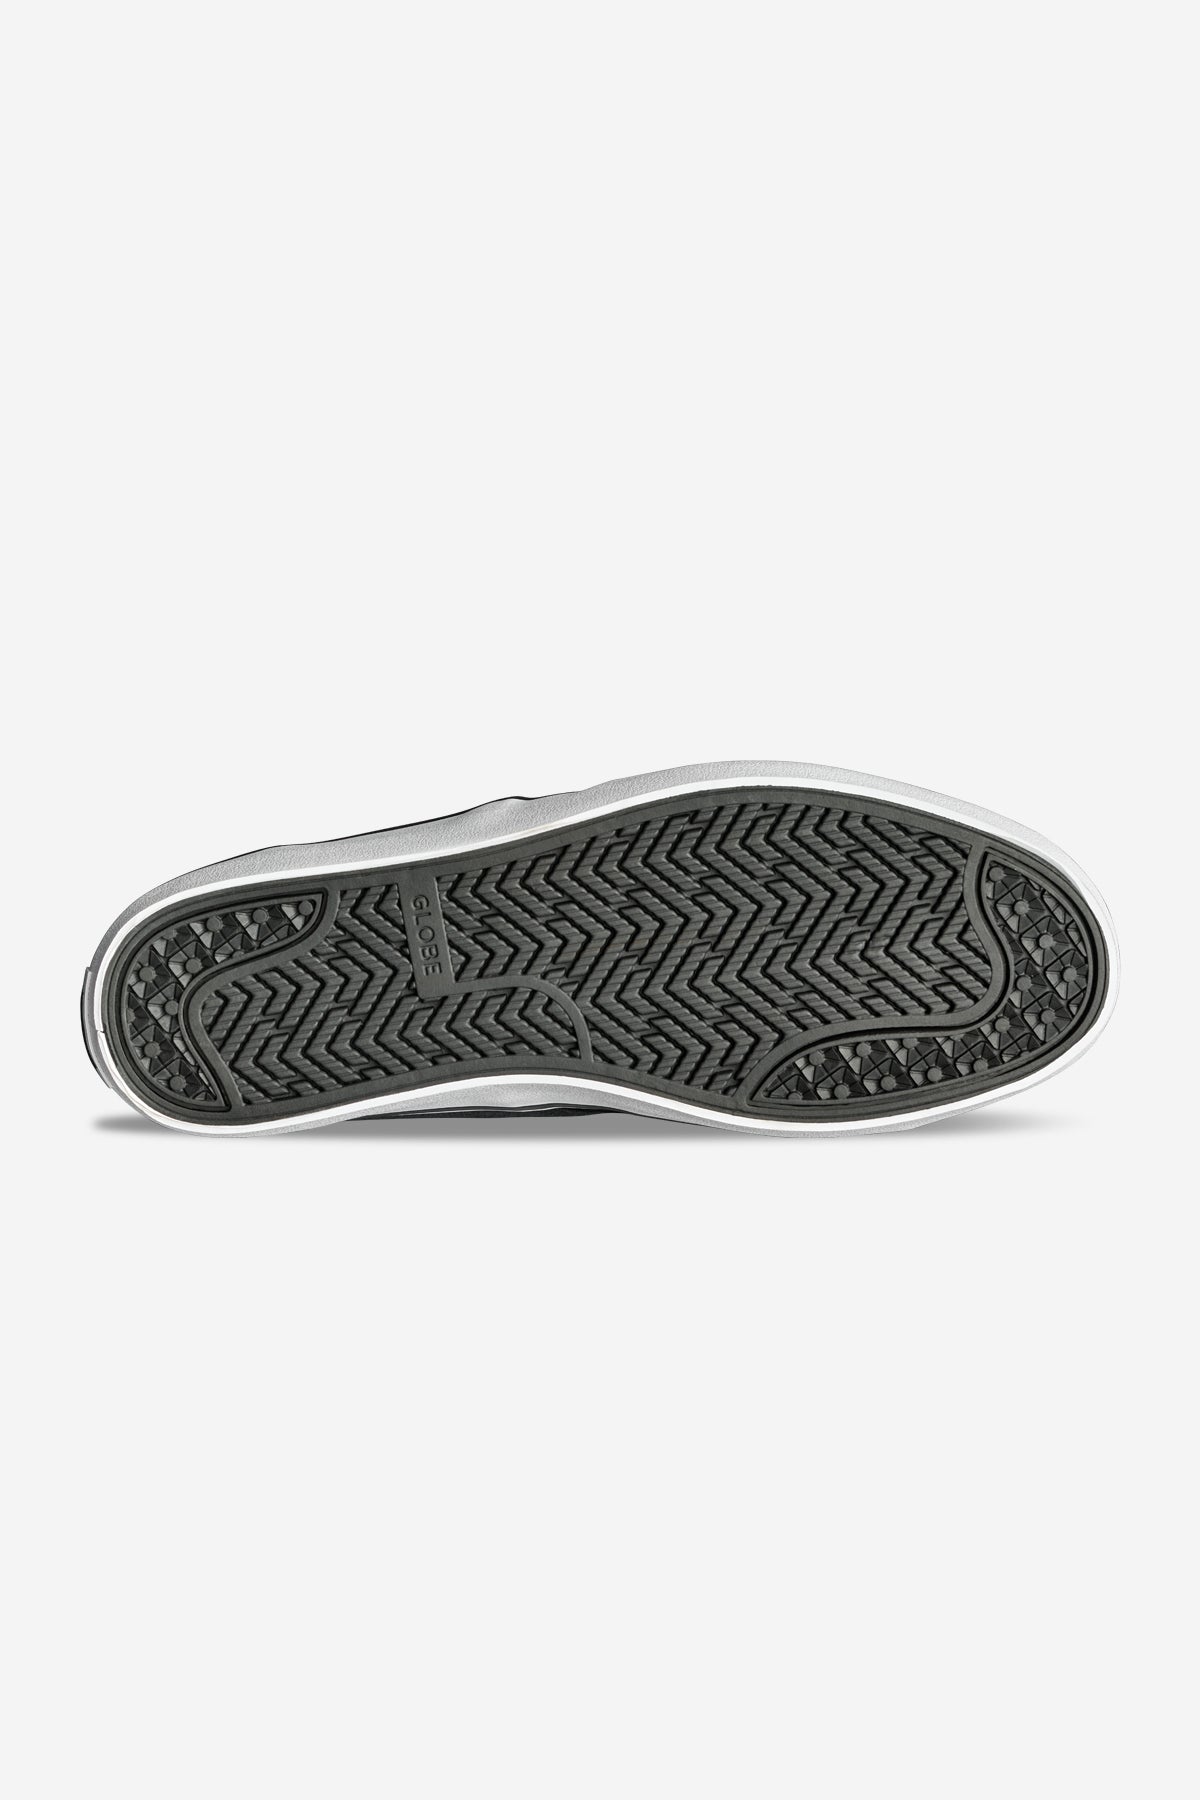 motley ii strap negro white skateboard  zapatos